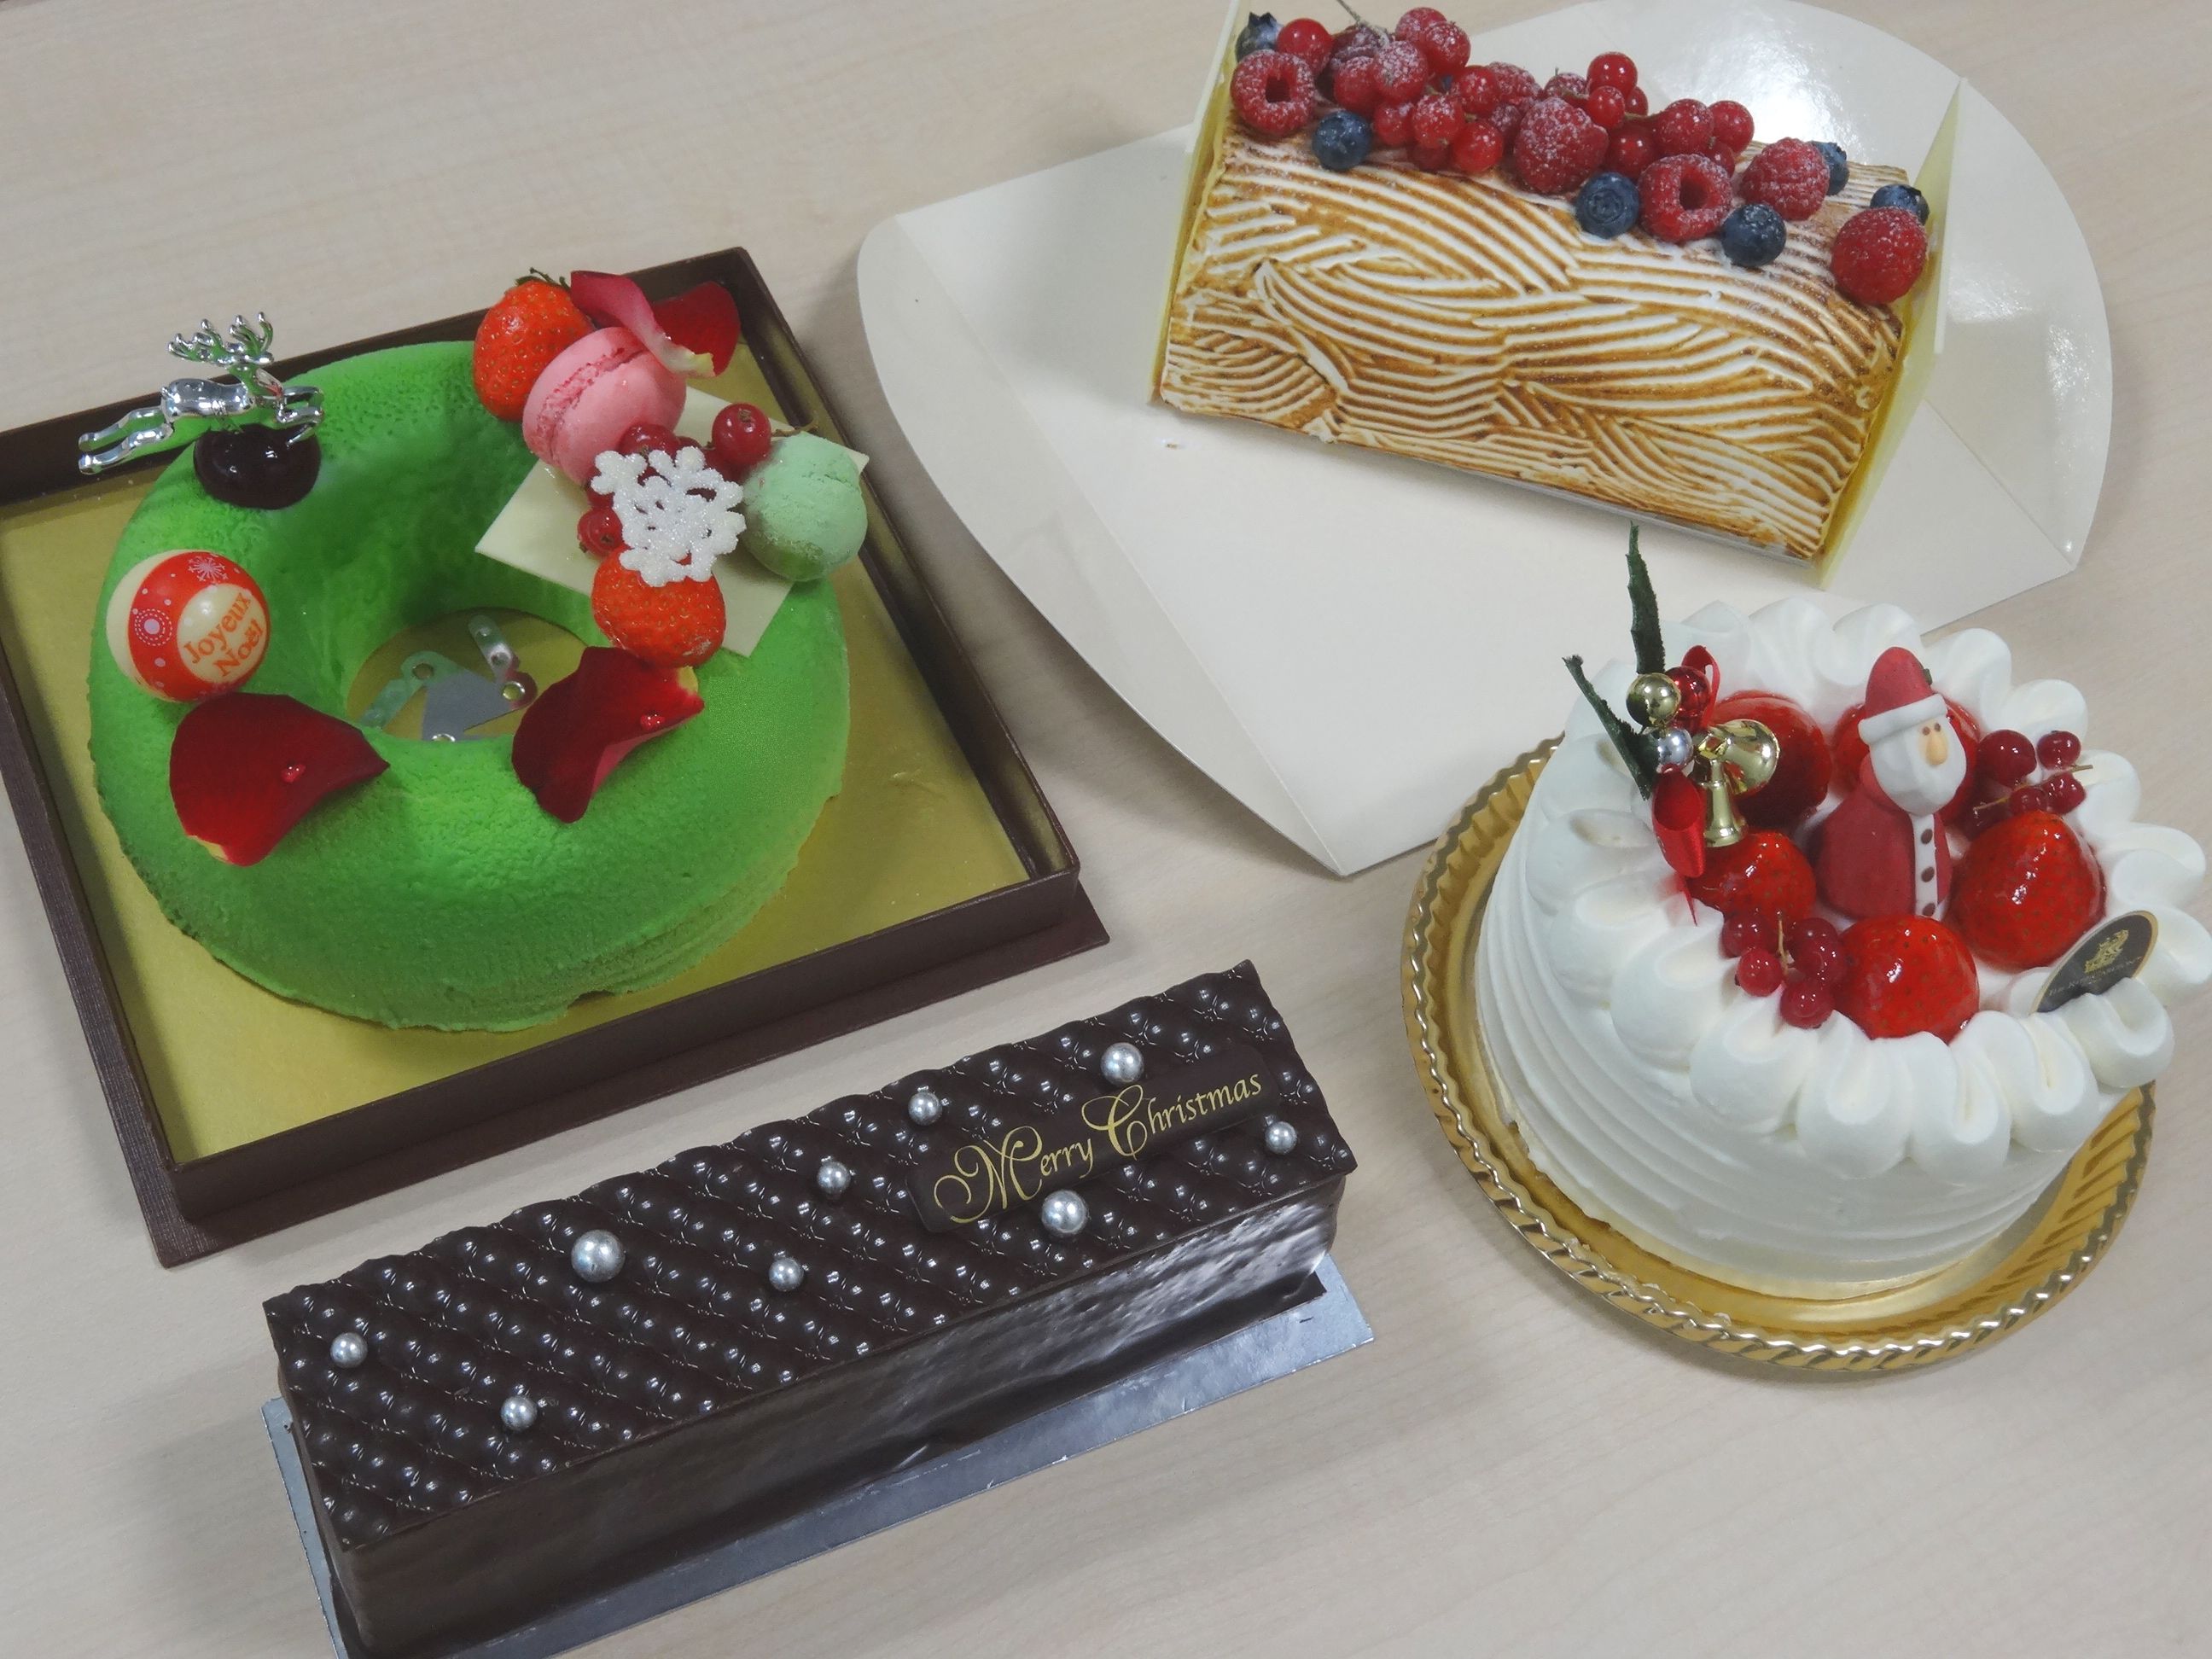 日本経済新聞電子版 今週の３つ星スイーツ 番外編 5000円以内で買える都内ホテルのクリスマスケーキ 編の選考 コメントをしています 11 27 幸せのケーキ共和国